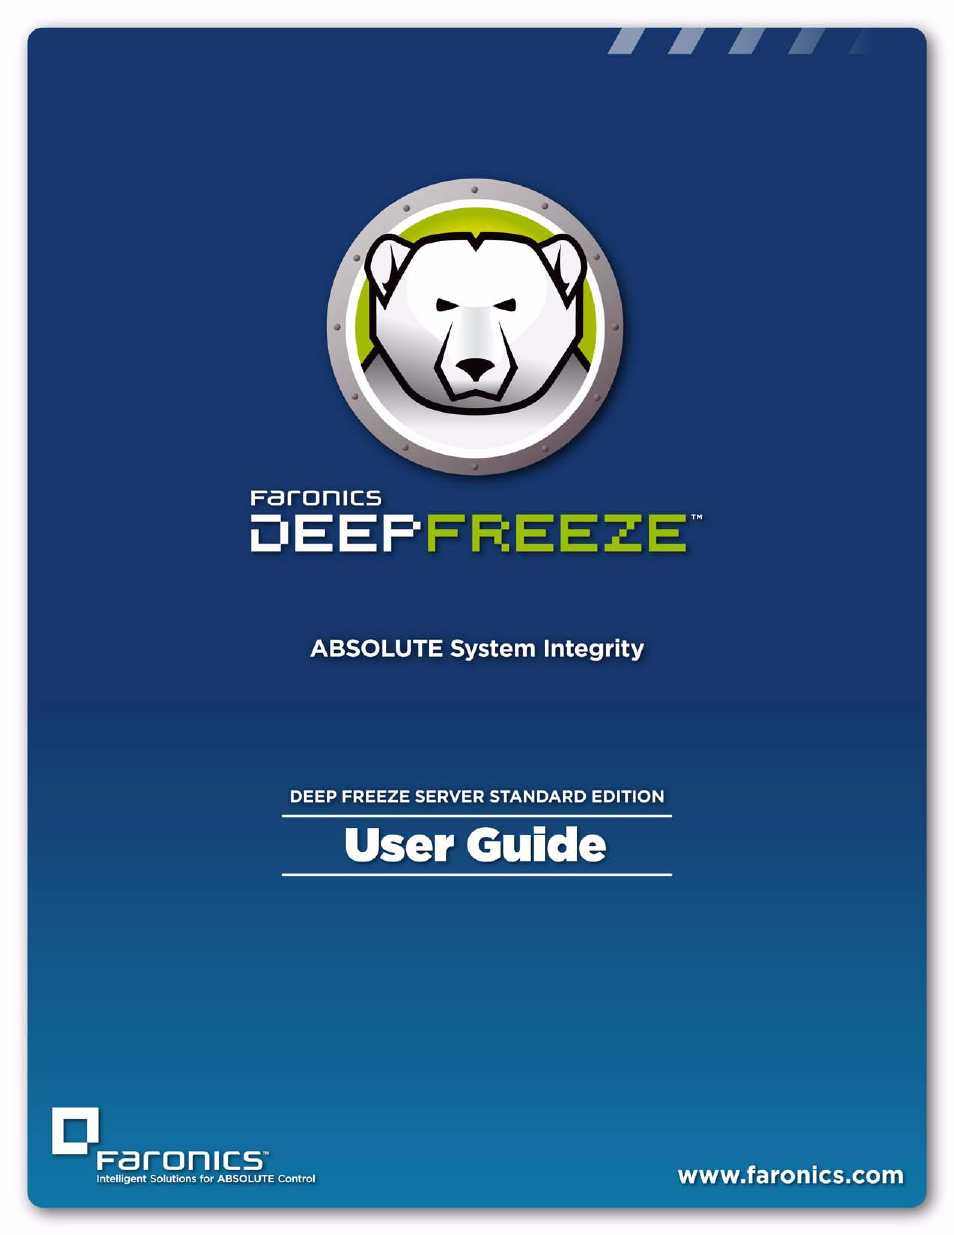 Deep Freeze Server Standard Edition